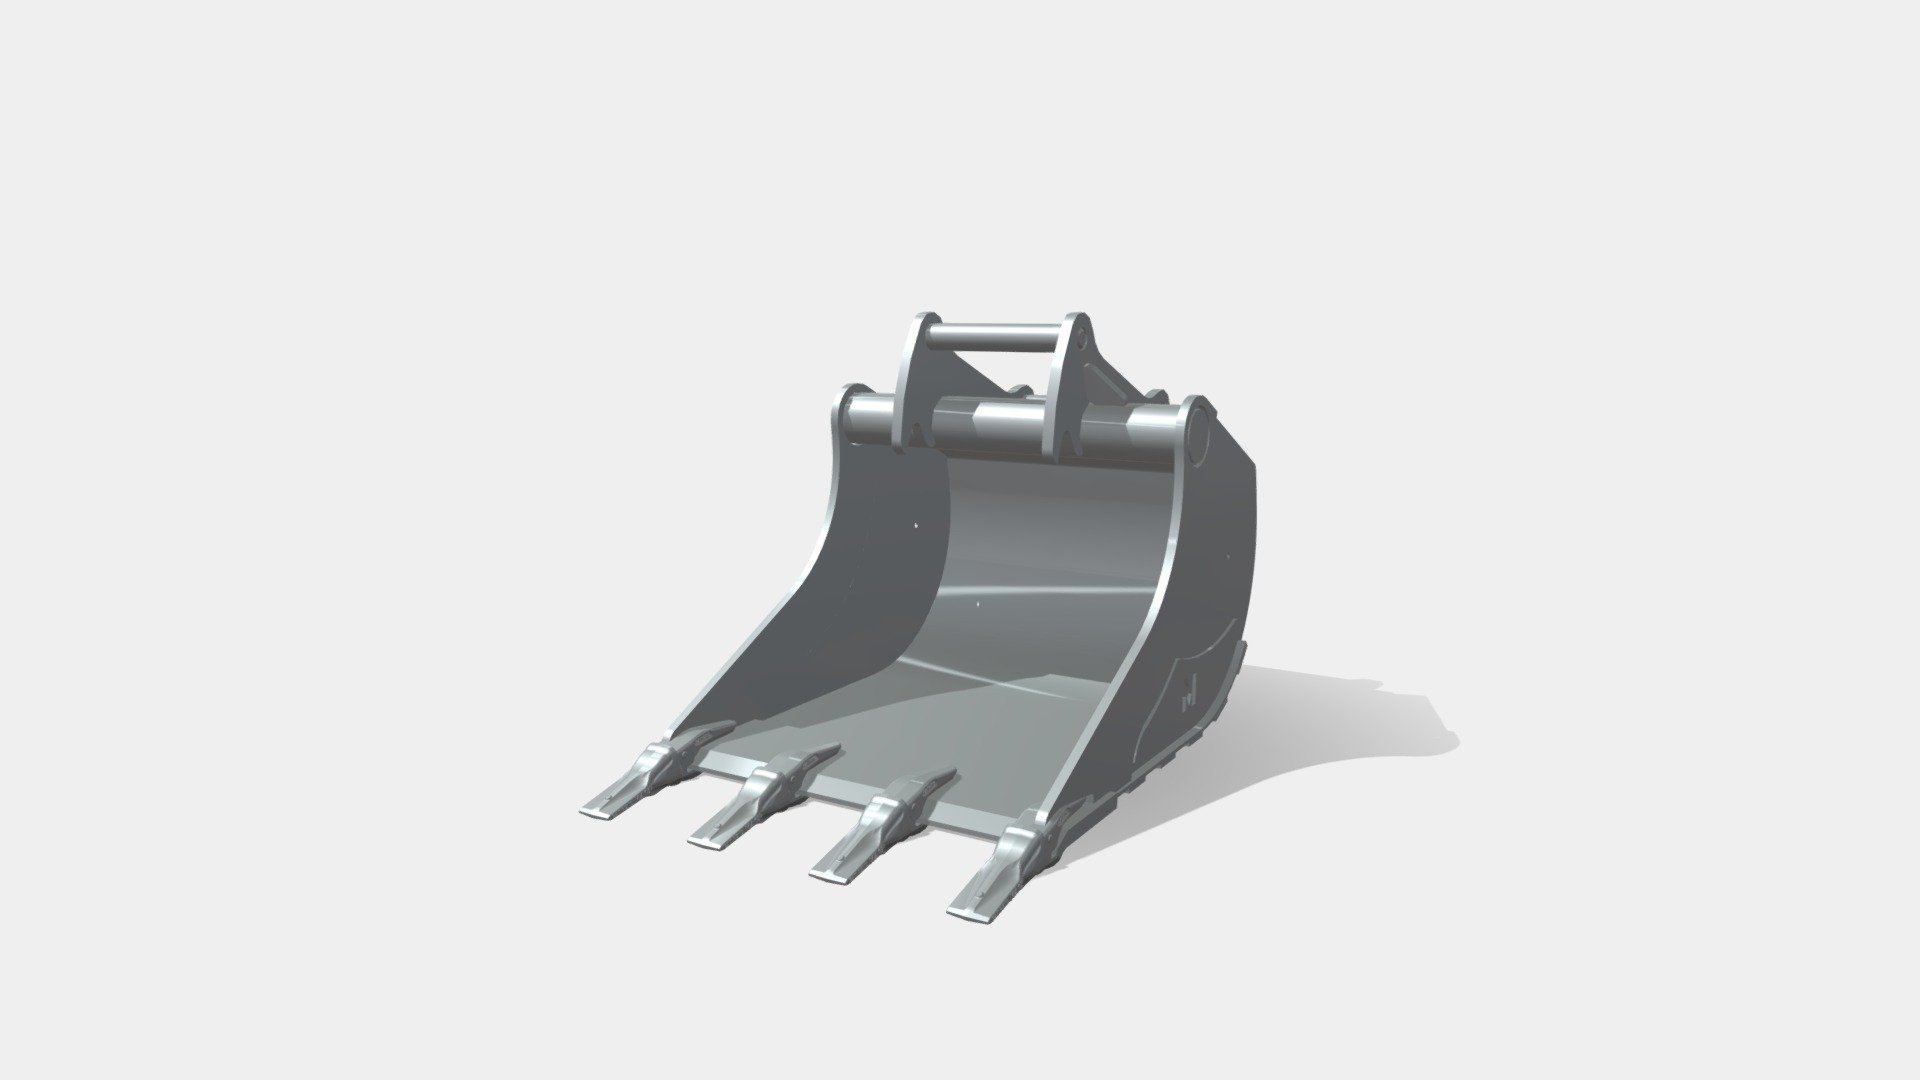 Pour excavatrices 9,2 - 22,5 T - Godet de terrassement profil tilt - 3D model by MAGSI 3d model